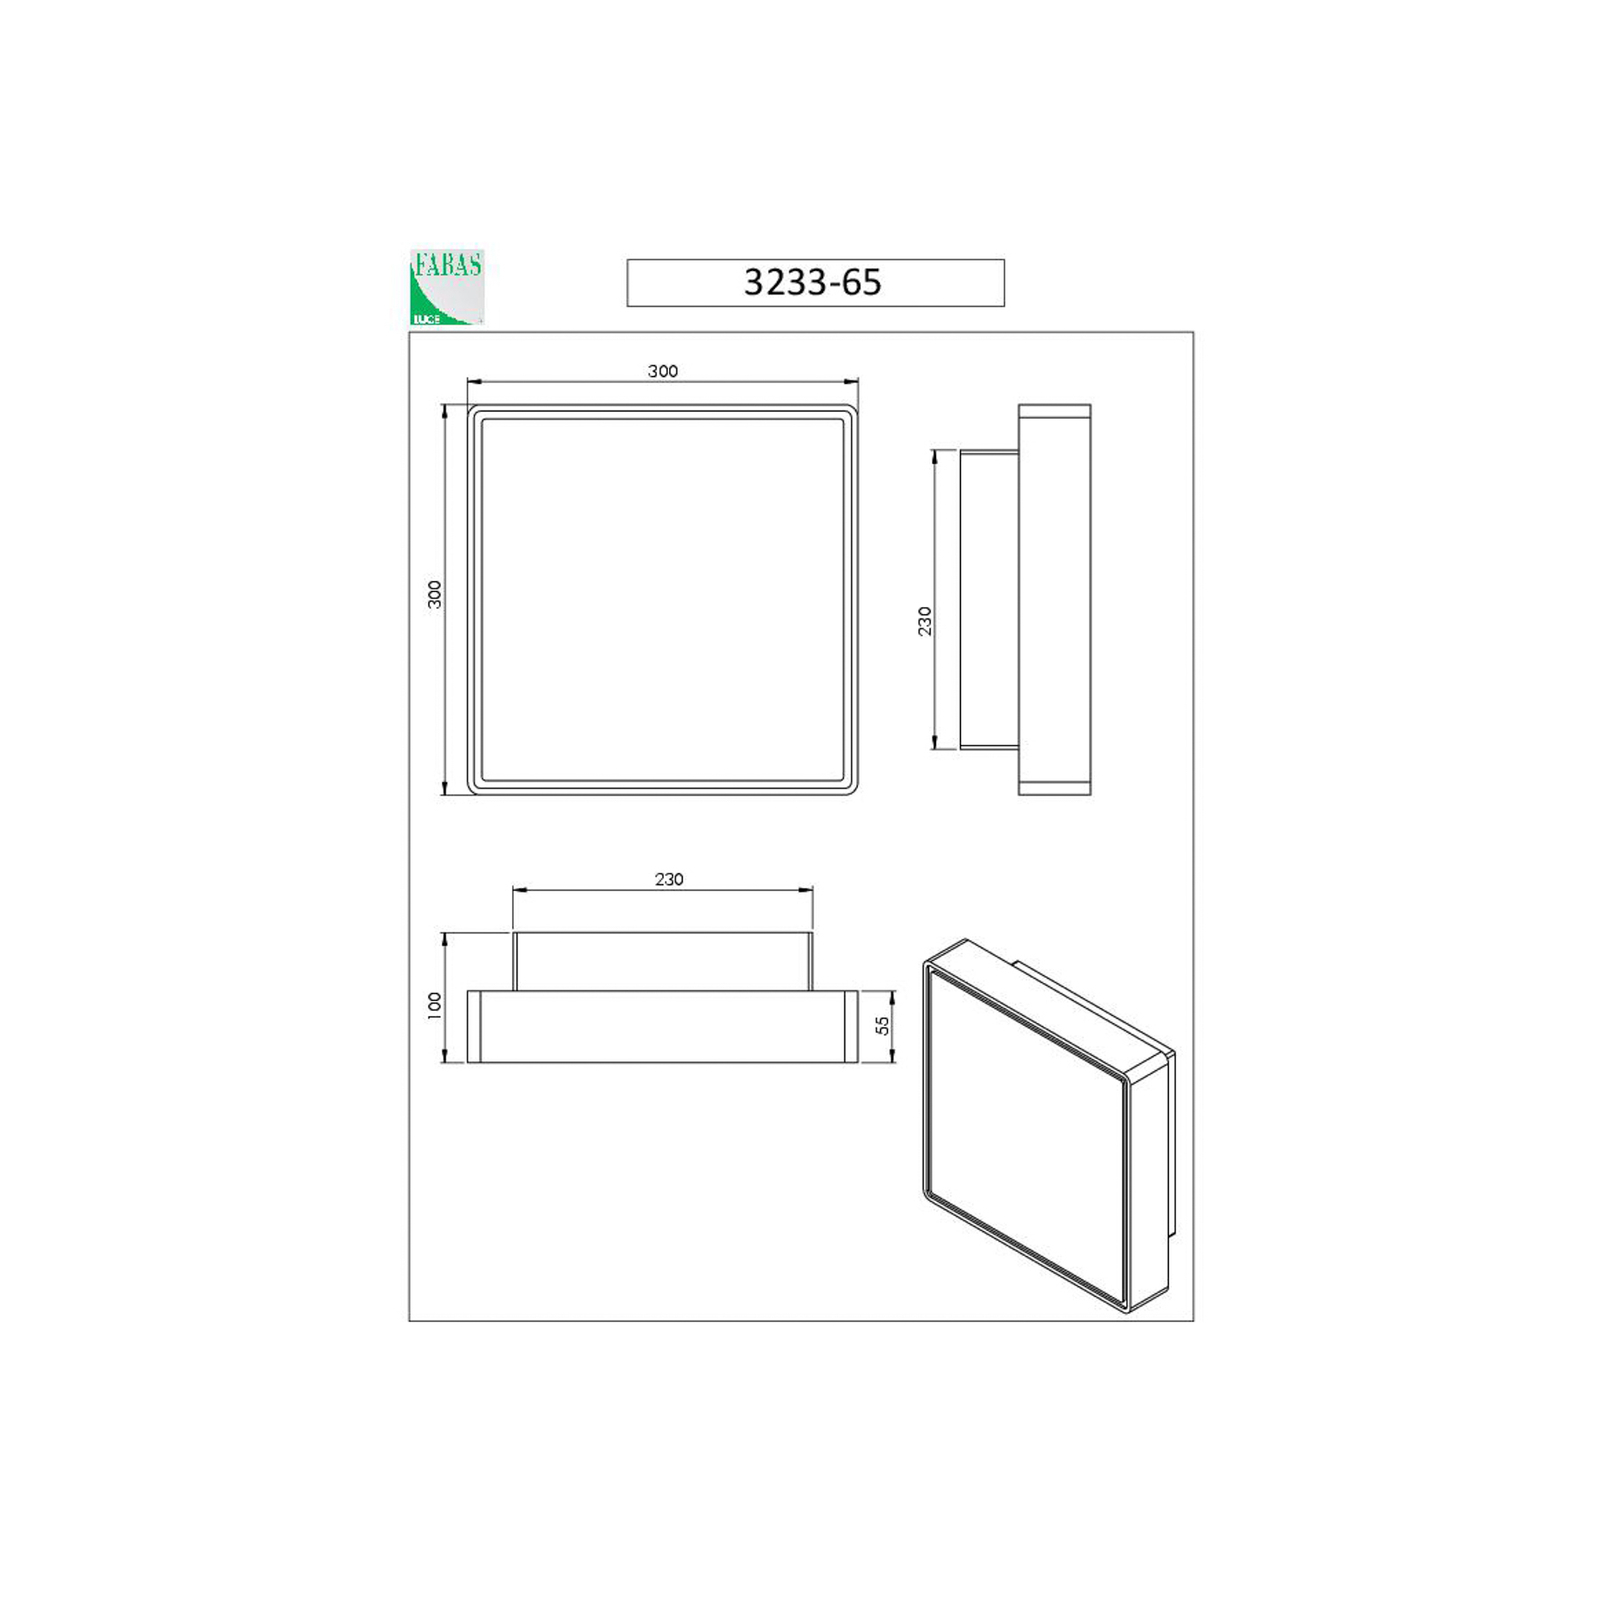 Aplique de pared Oban, 30 cm x 30 cm, 2 x E27, blanco, IP65